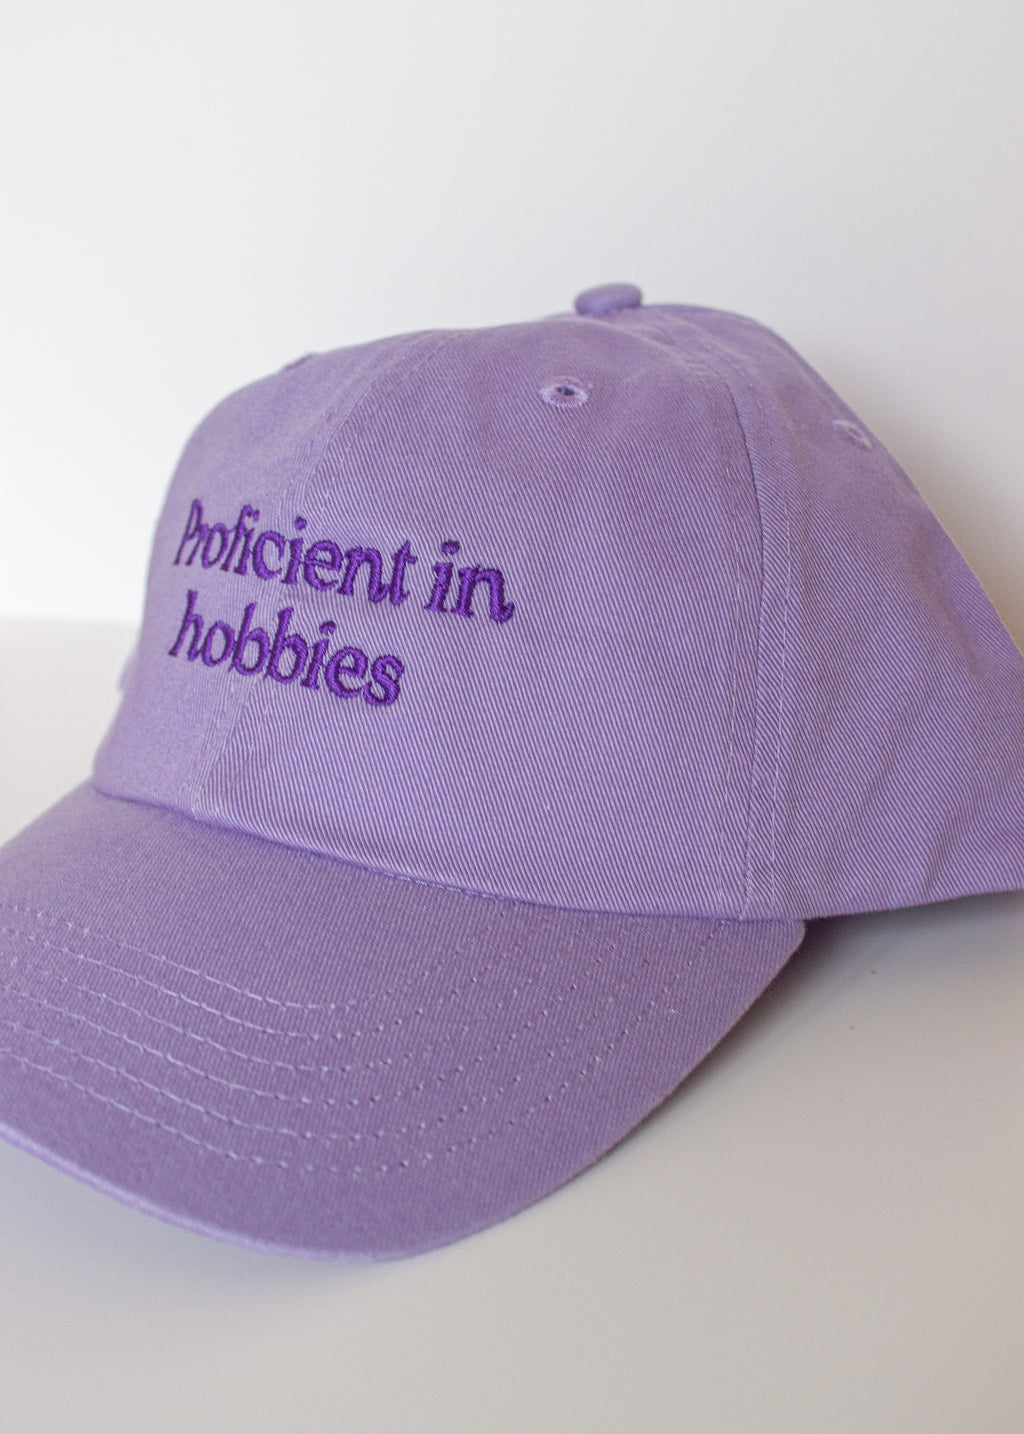 Hobbies Hat